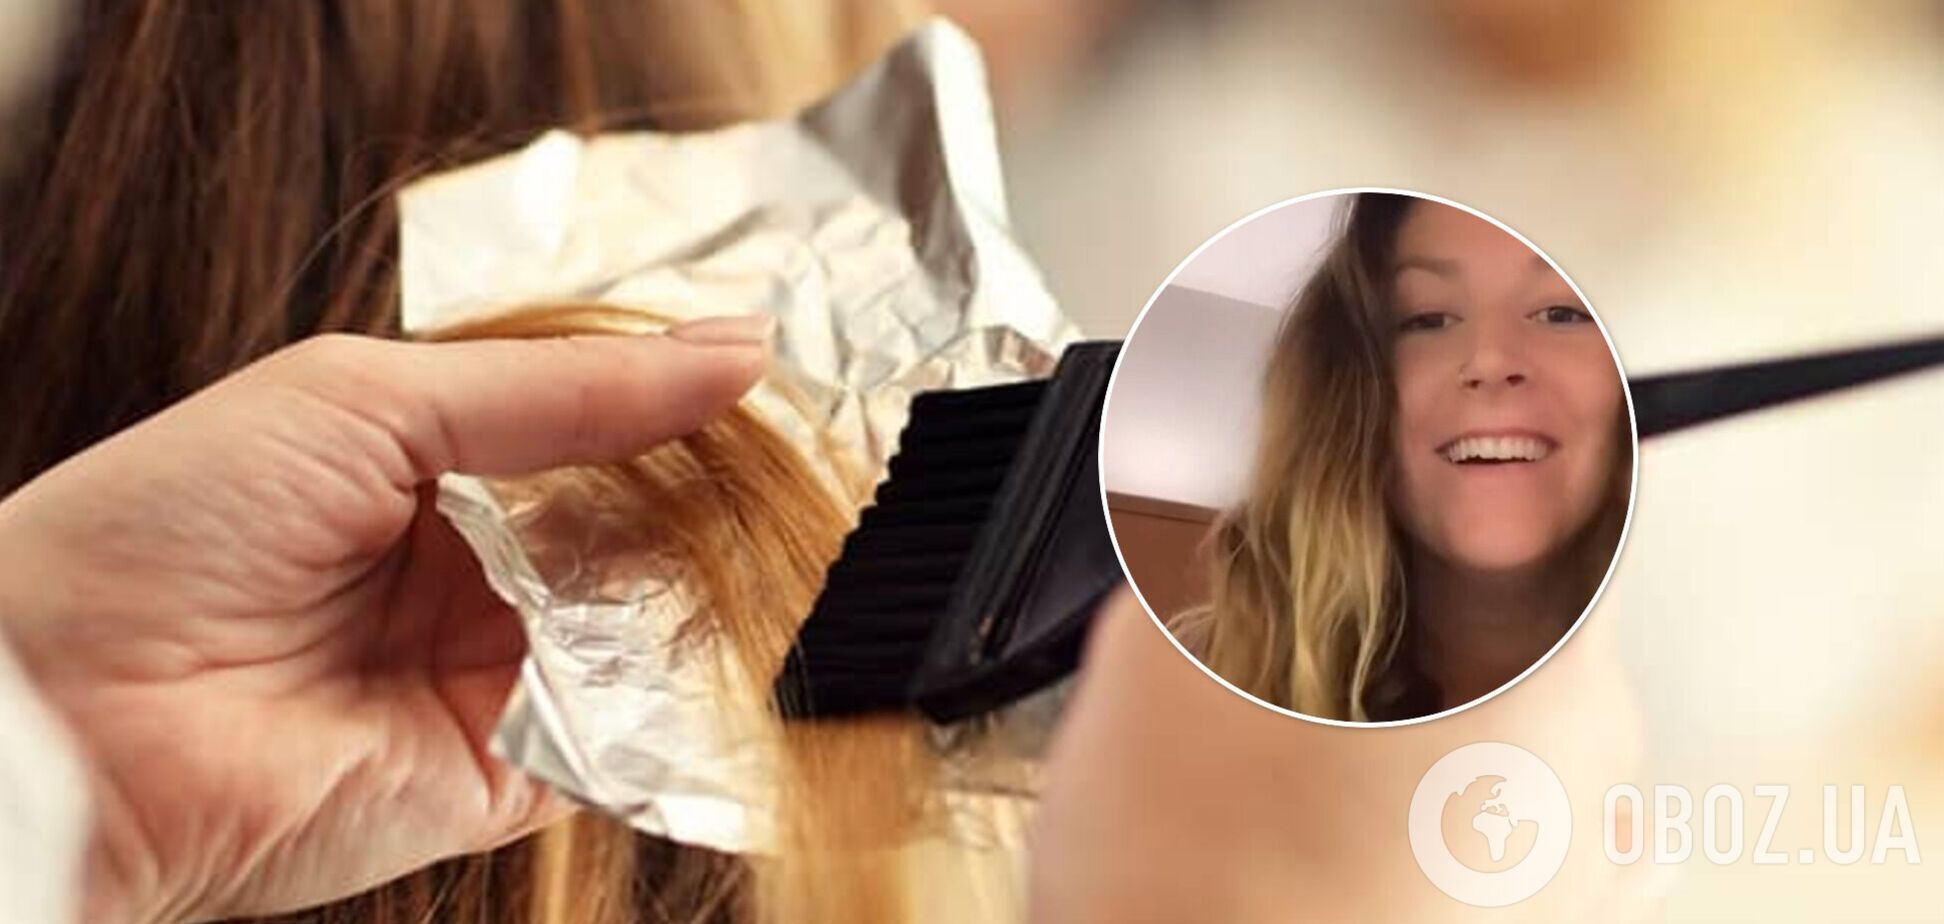 Американці в салоні краси випадково зіпсували волосся відбілювачем. Відео